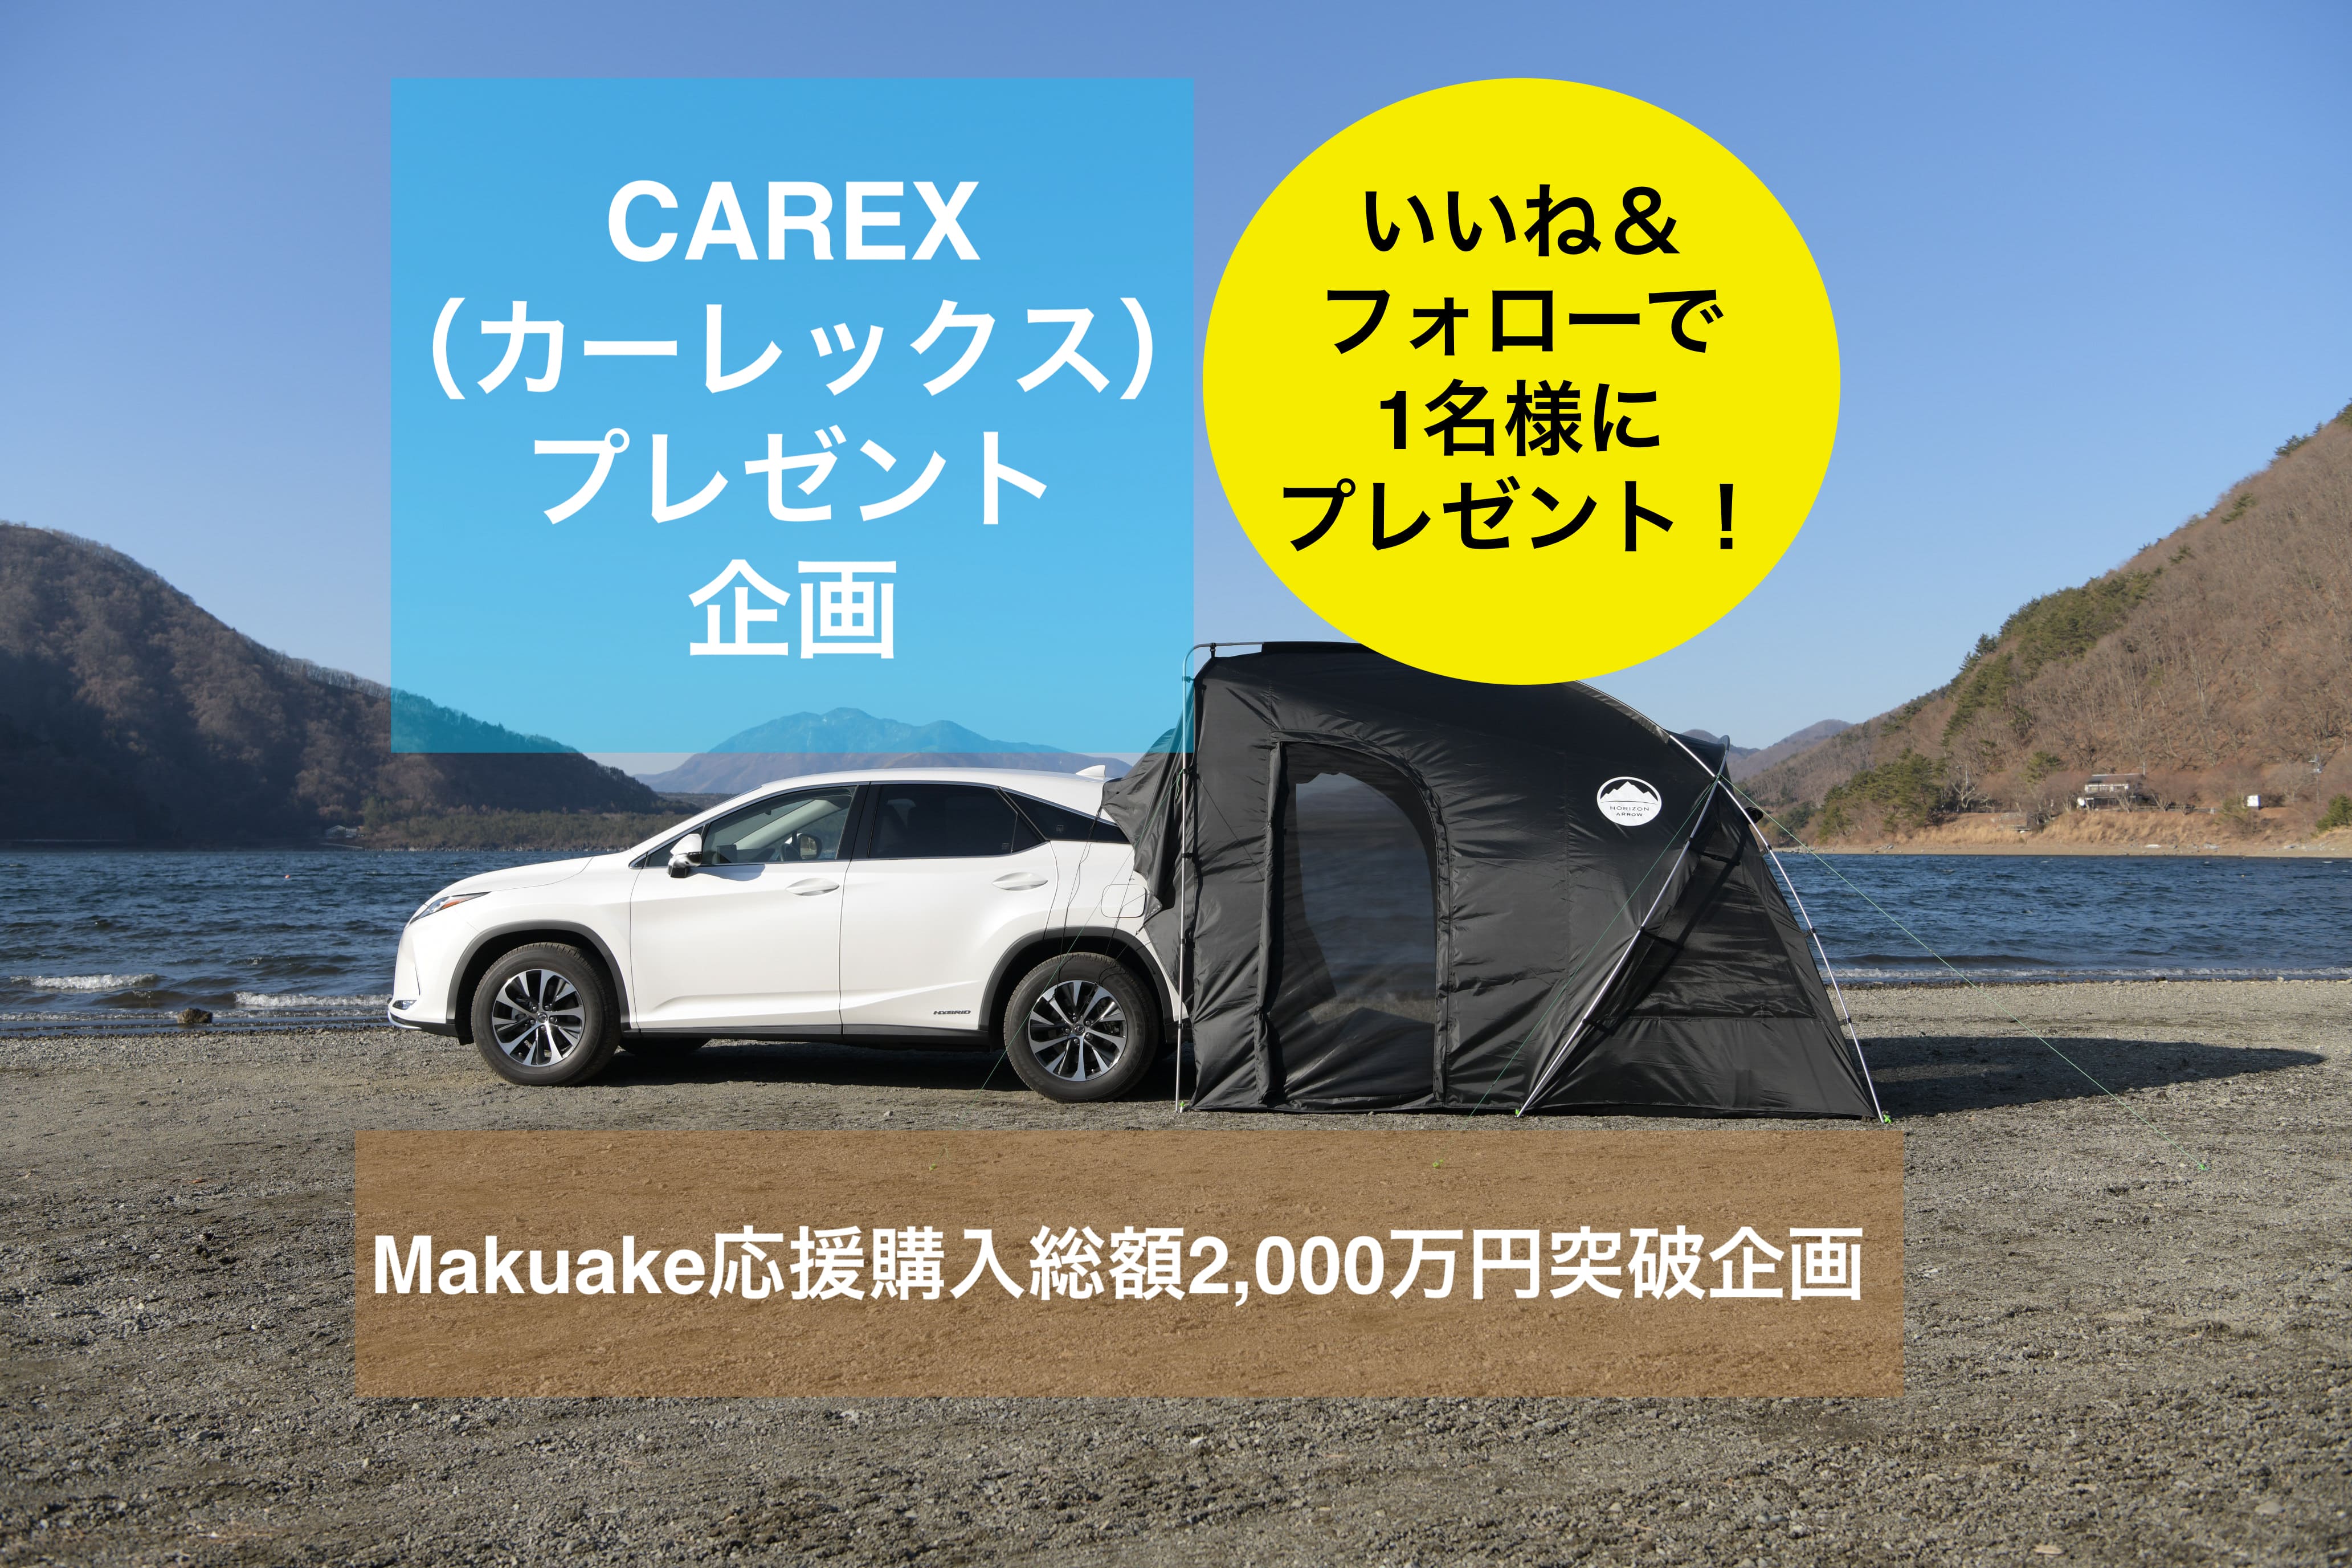 カーレックス テント 車に連結できるテント - アウトドア